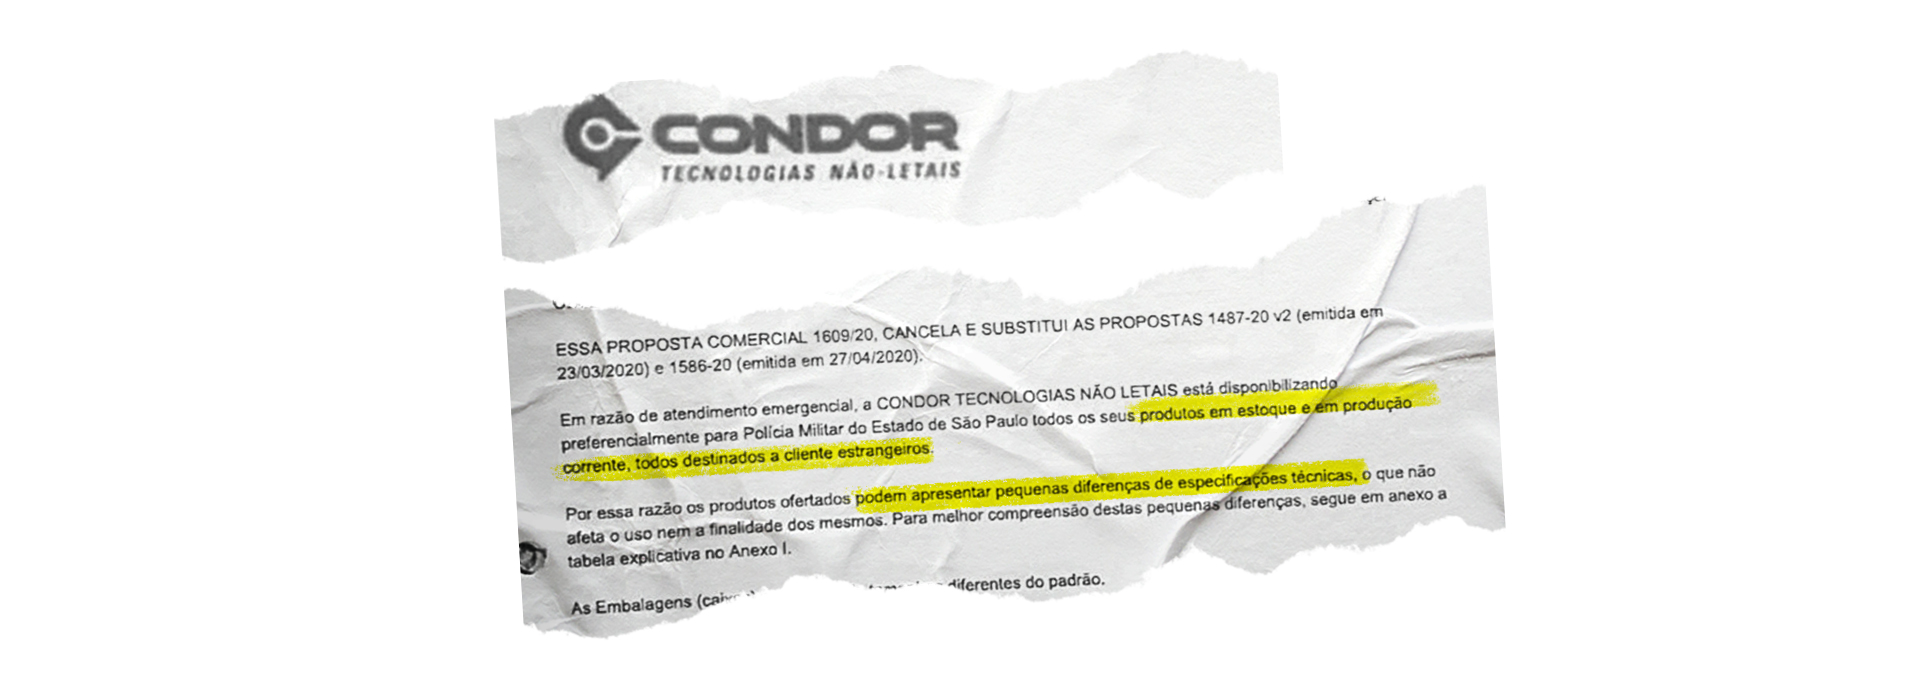 Documentos da Condor mostram que a empresa informou a polícia paulista sobre diferenças nos produtos fabricados para vendas ao exterior | Foto: Juliana Dal Piva